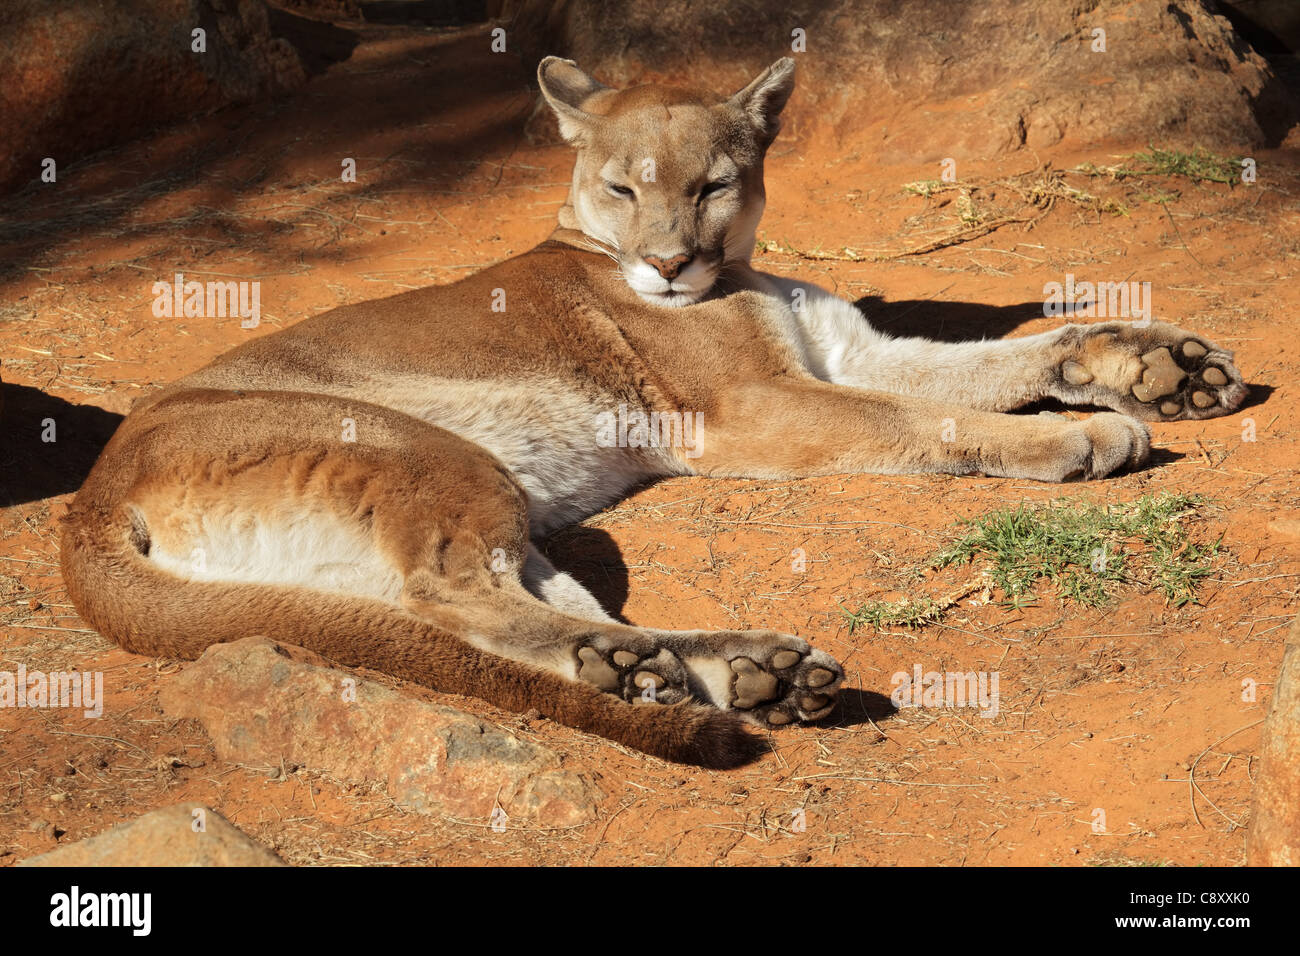 Ein Cougar (Puma Concolor), auch bekannt als Puma, Puma oder Panther auf dem Boden Stockfoto